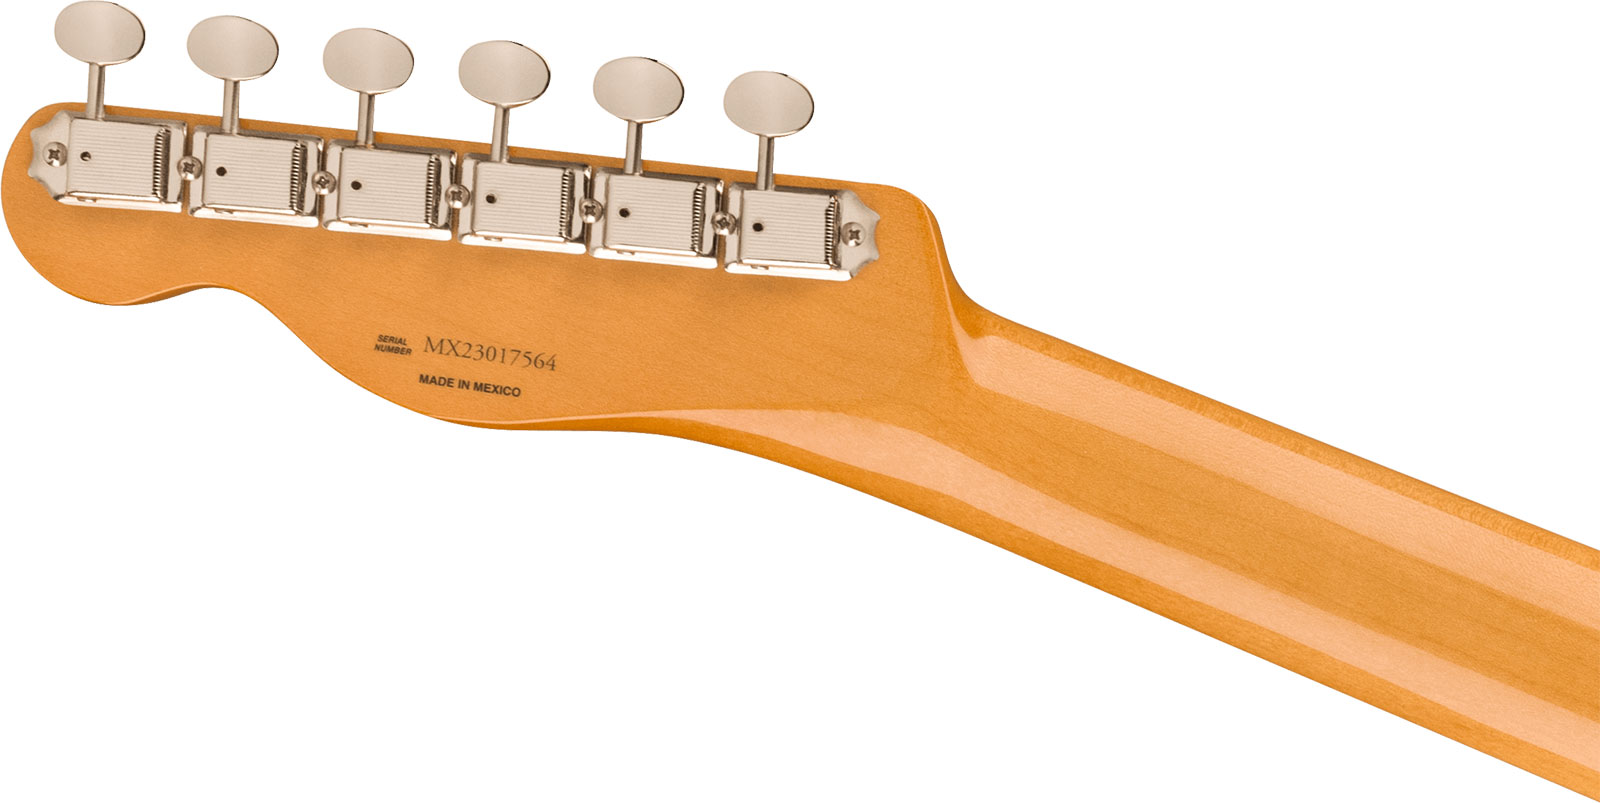 Fender Tele 60s Vintera 2 Mex 2s Ht Rw - Fiesta Red - Televorm elektrische gitaar - Variation 3